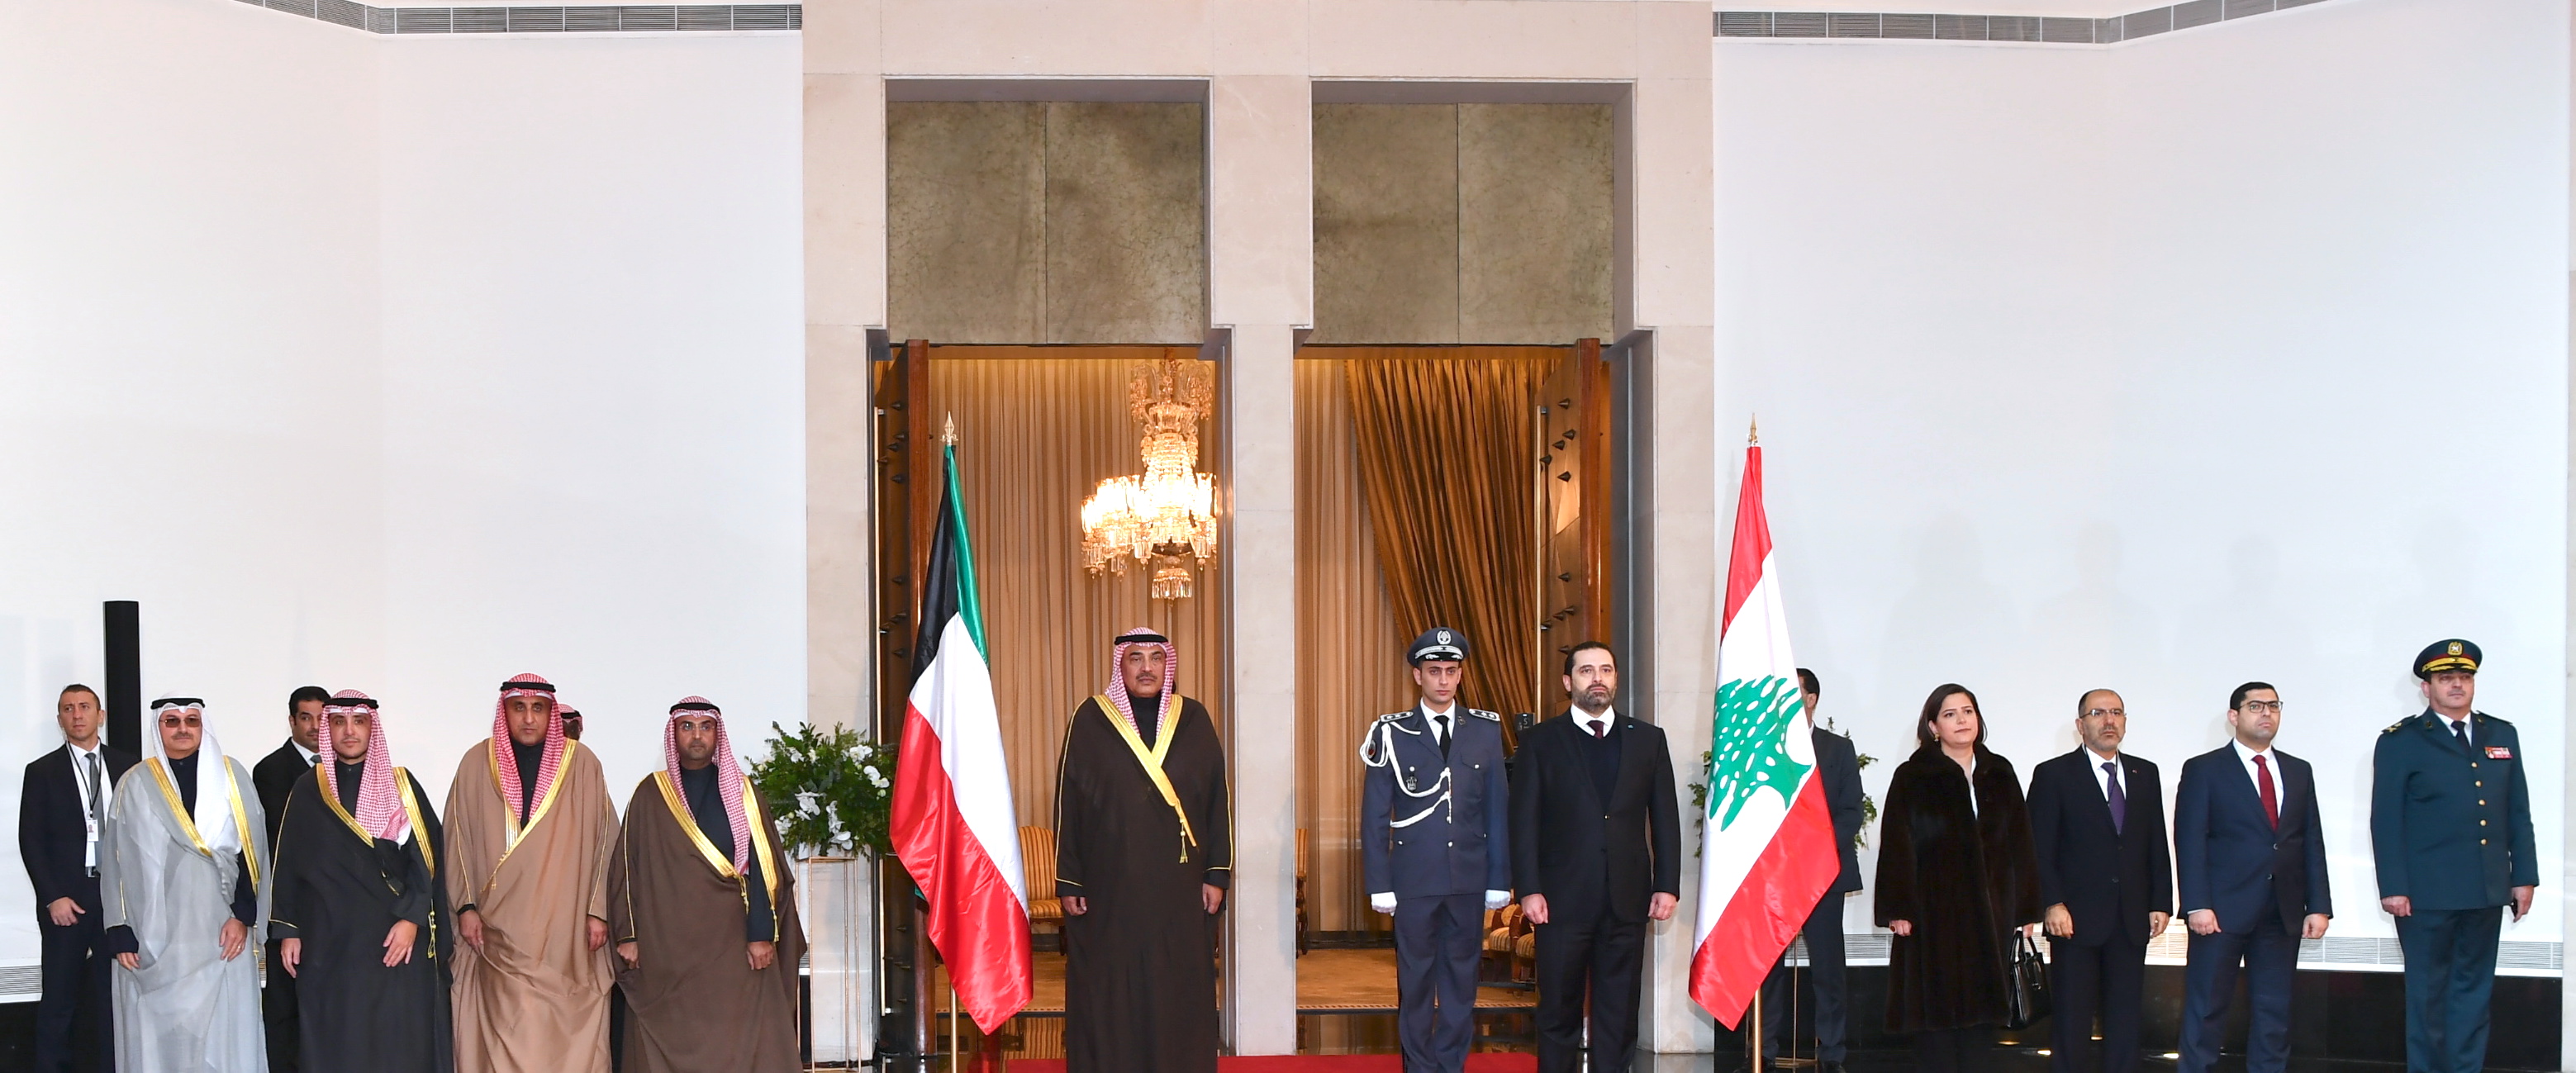 Representing His Highness the Amir, Deputy Prime Minister and Foreign Minister Sheikh Sabah Al-Khaled Al-Hamad Al-Sabah arrives in Beirut